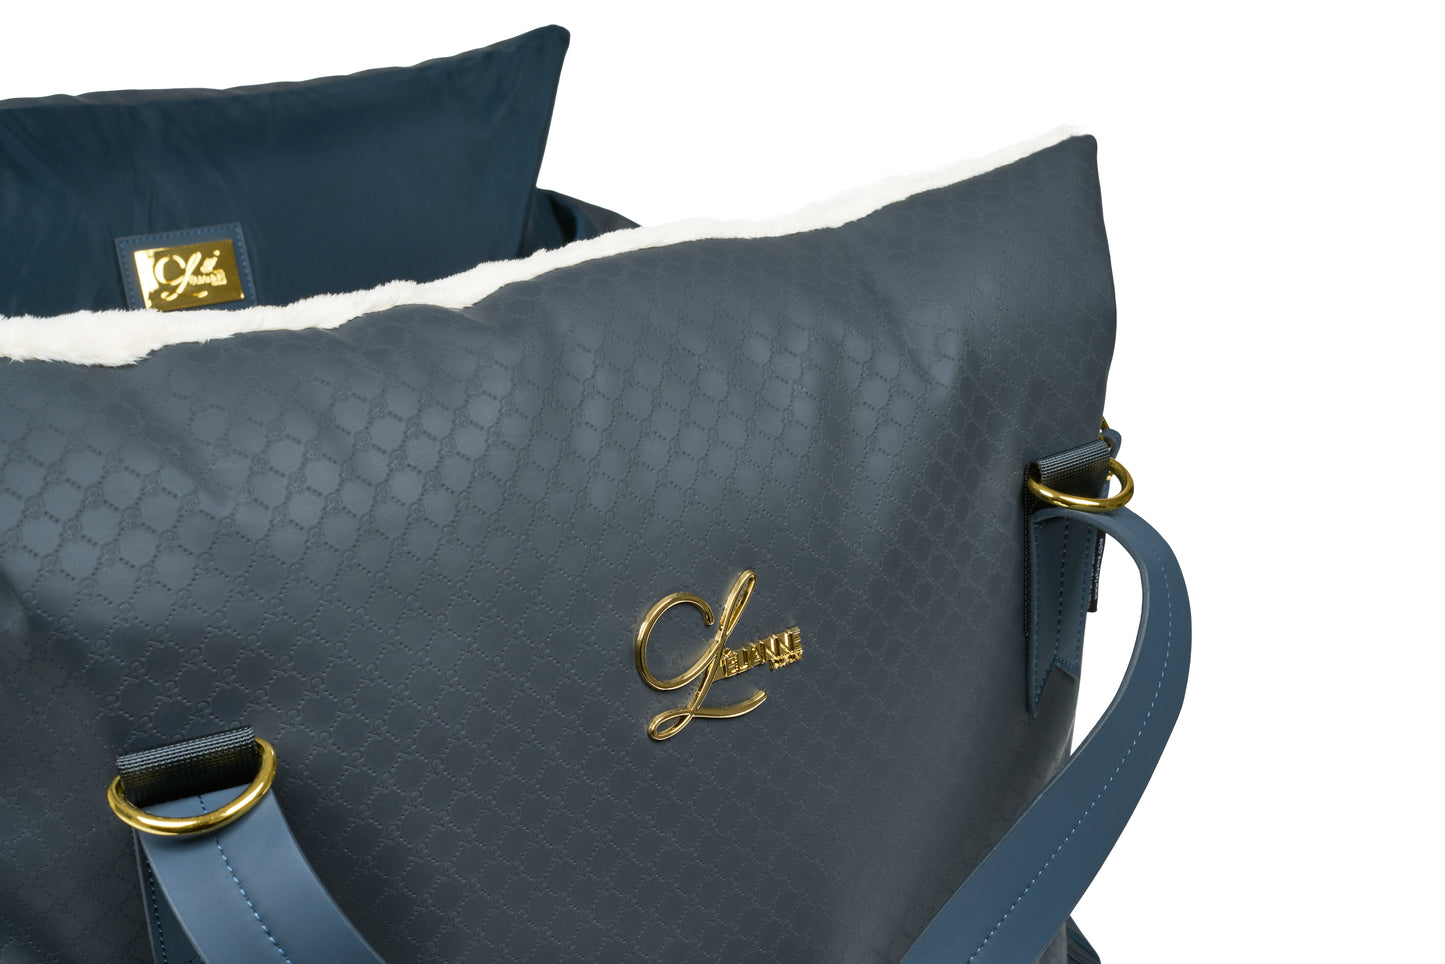 Designer Luxury Dog Car Seat by L'elianne